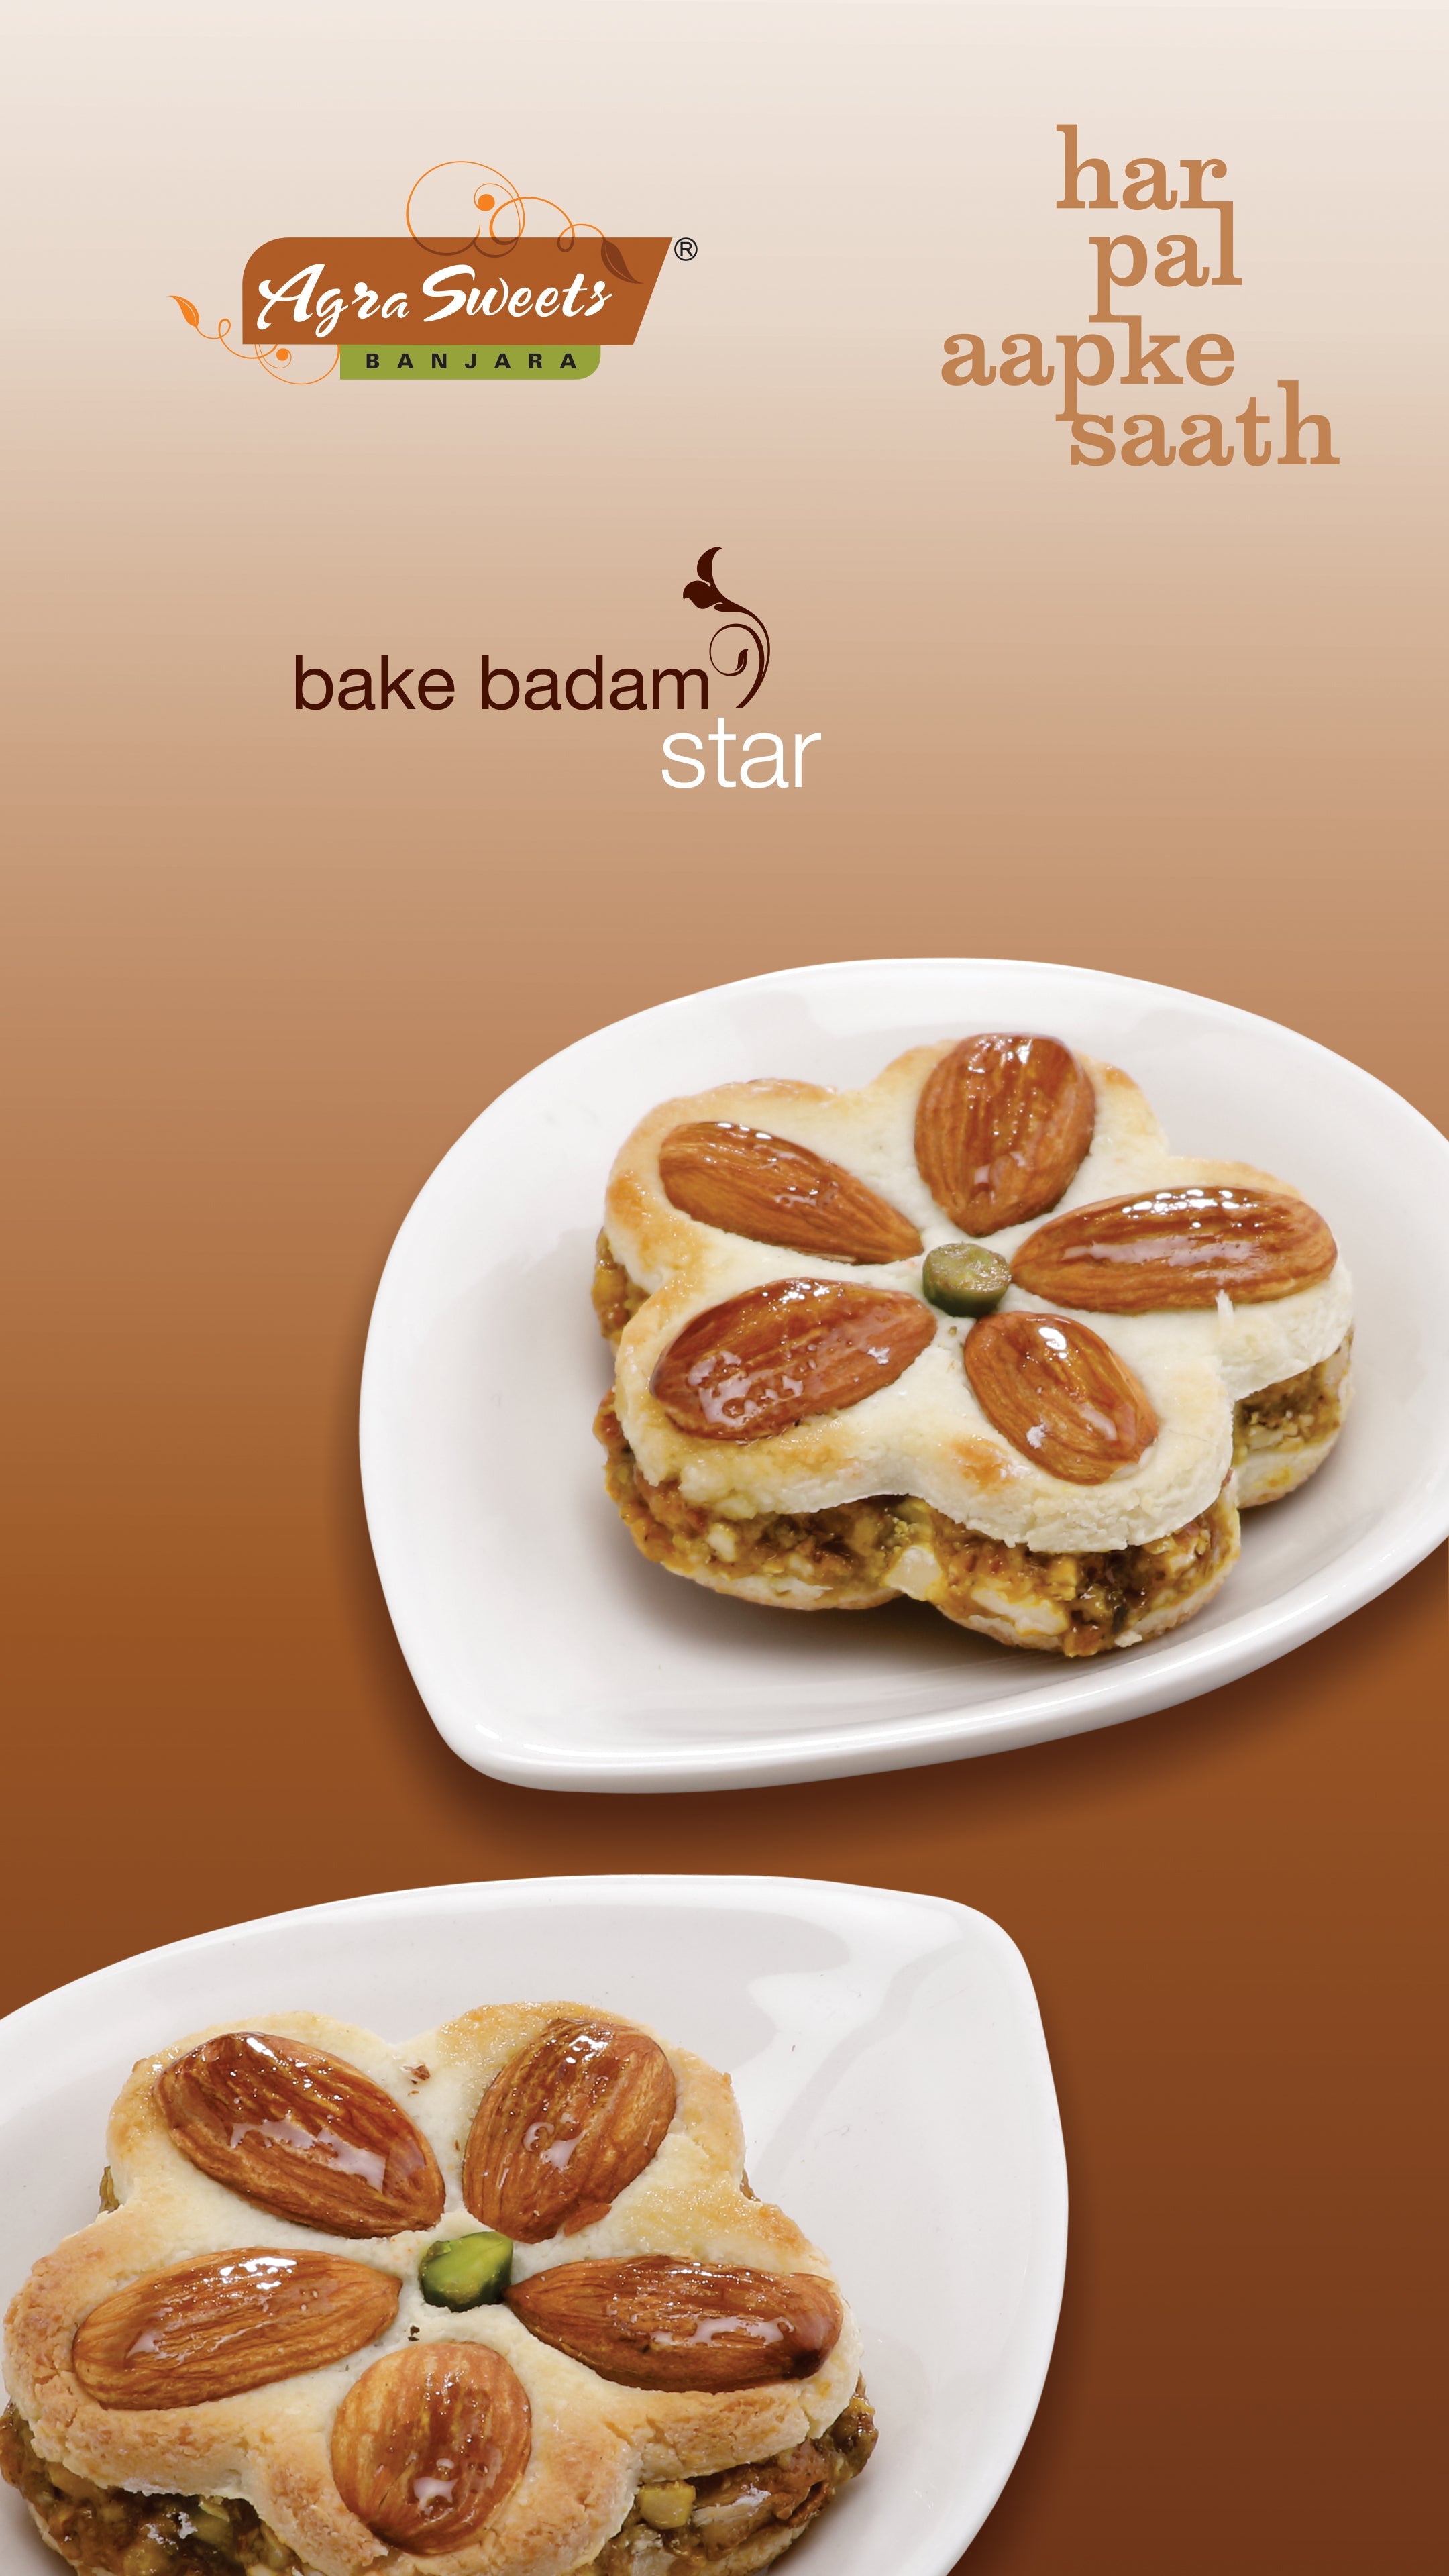 Bake Badam Star